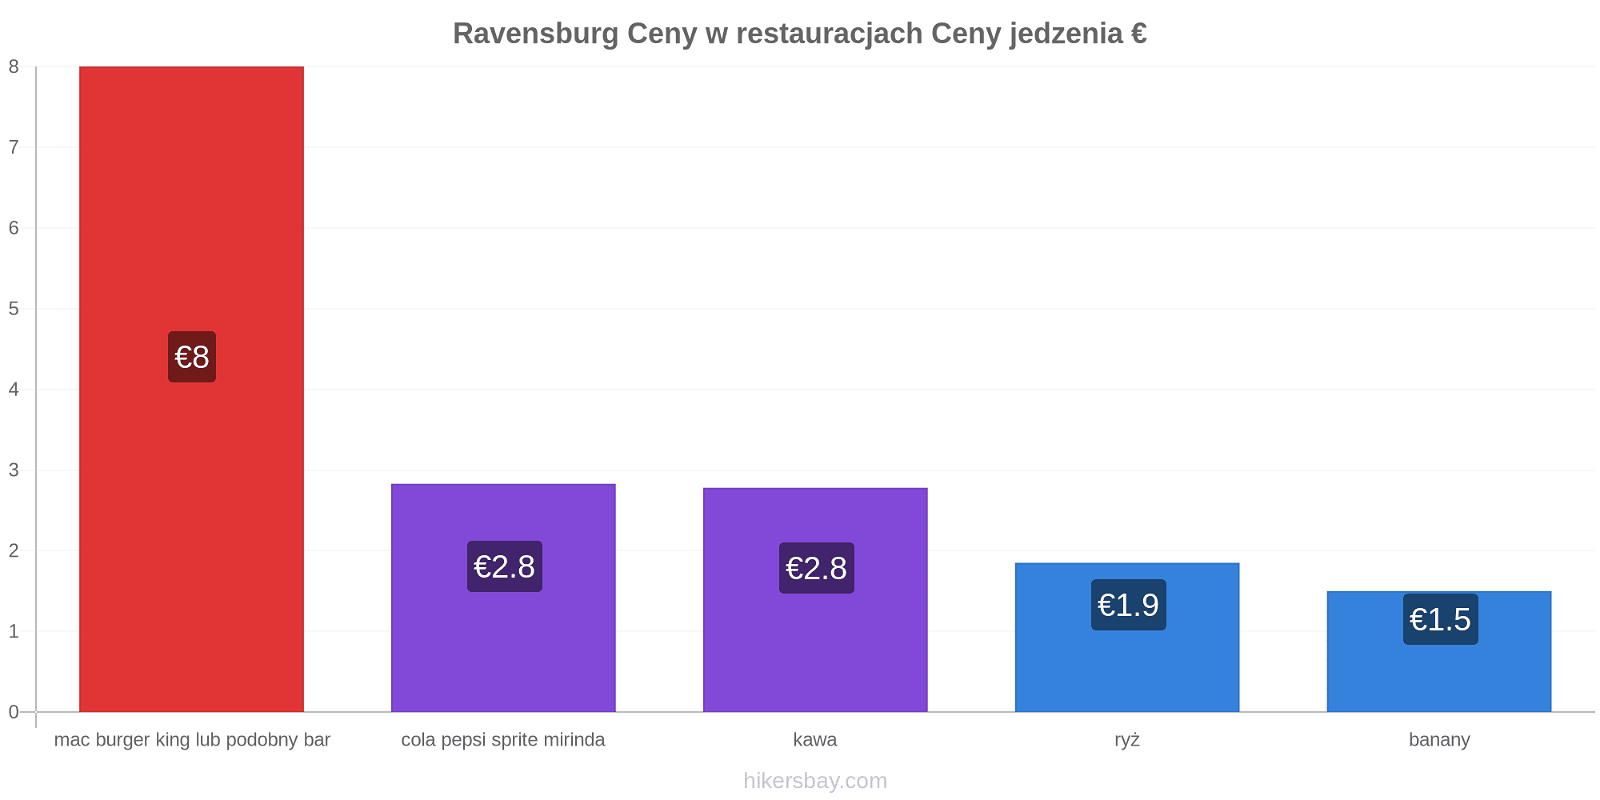 Ravensburg zmiany cen hikersbay.com